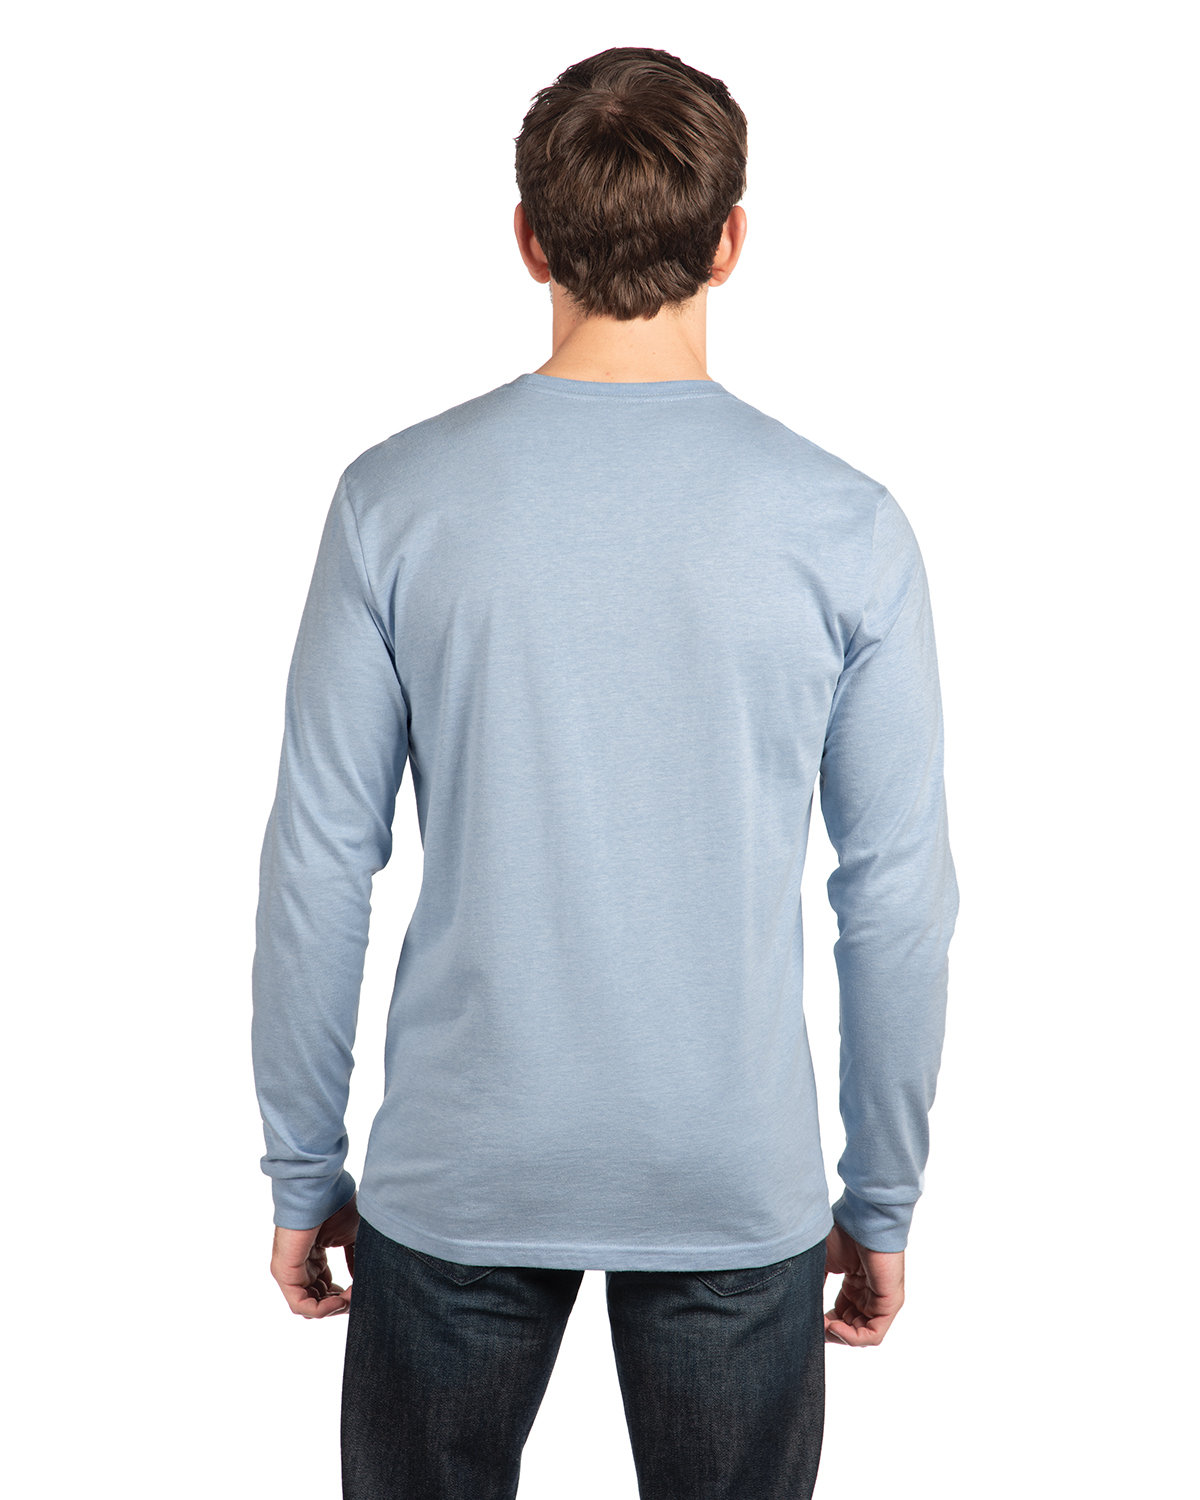 Next Level Apparel Unisex CVC Long-Sleeve T-Shirt | alphabroder